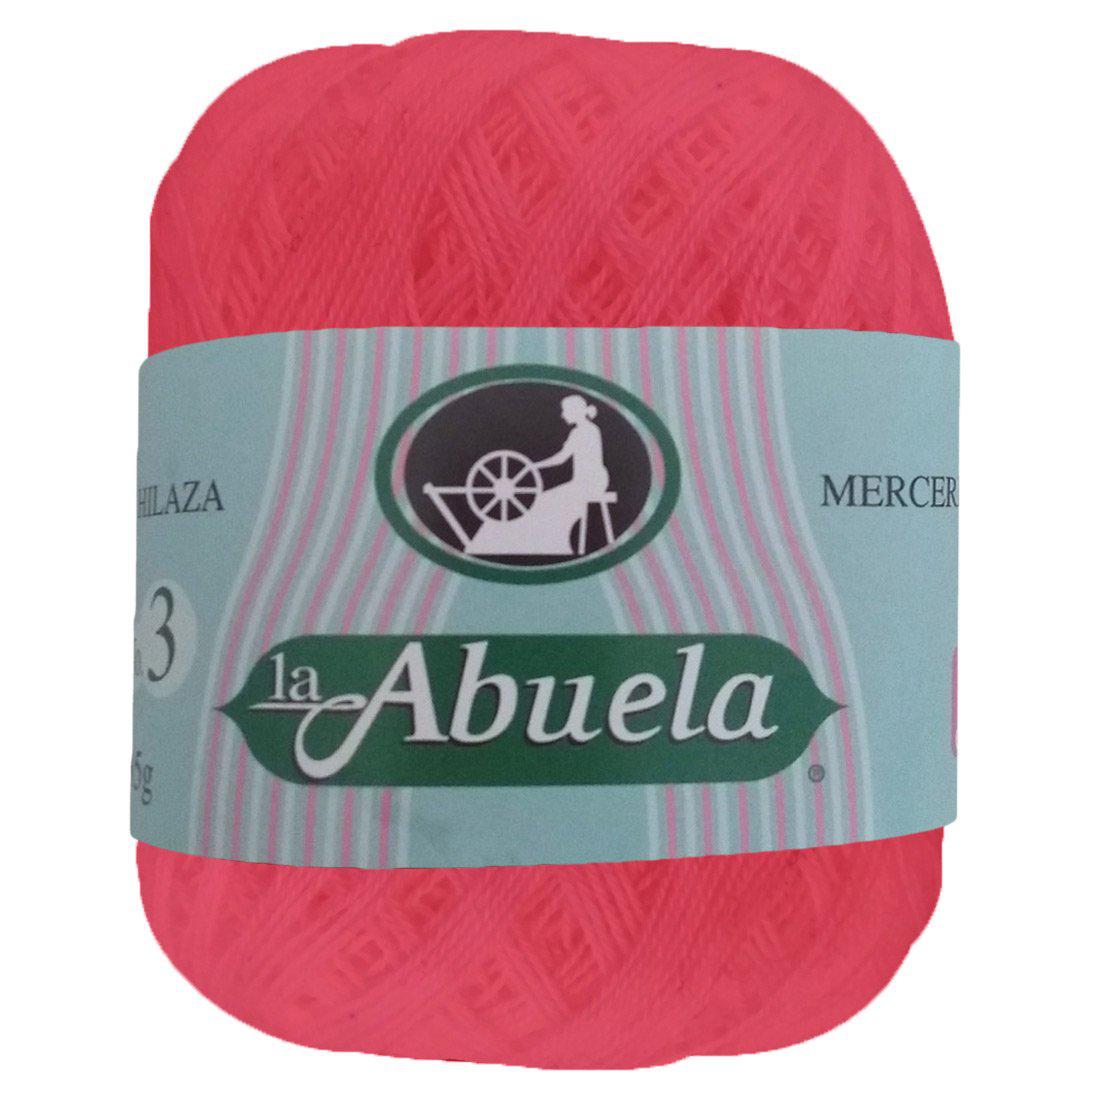 Hilaza La Abuela No.3, marca Omega, CAJA con 8 madejas de 35g con 300m